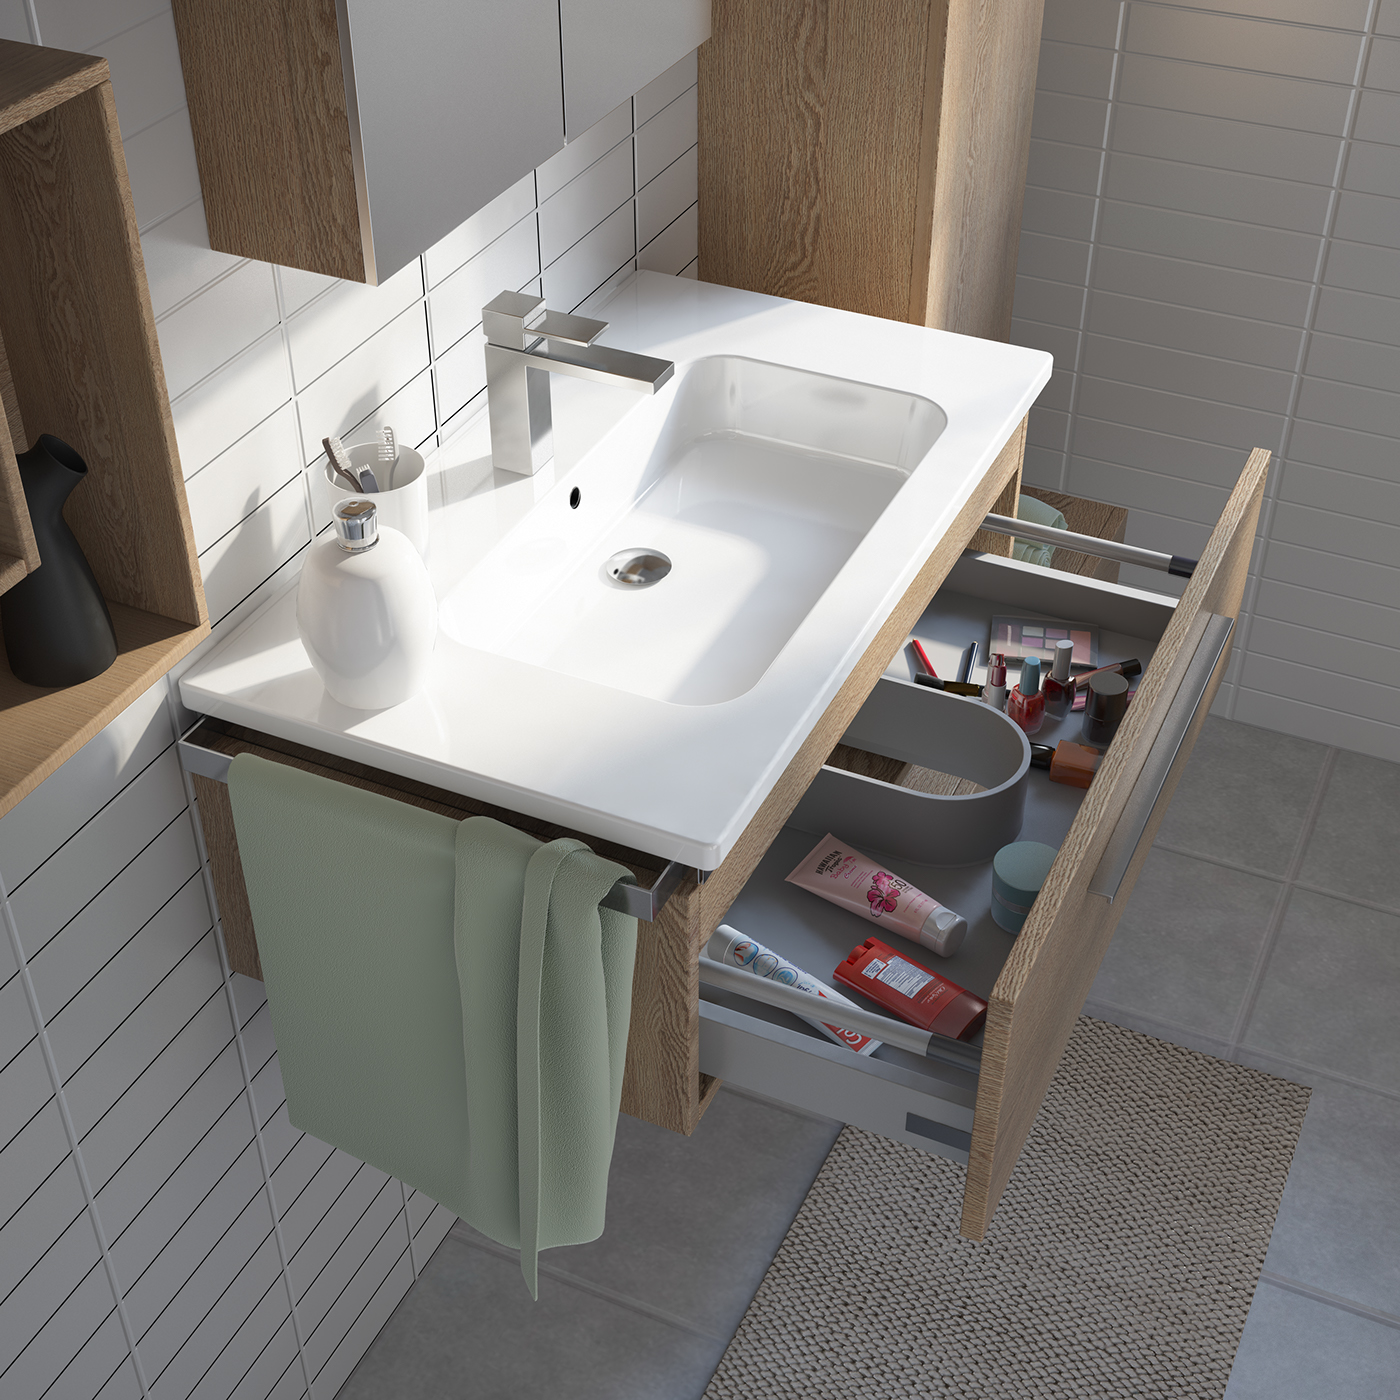 furniture design  interior design  wood bath bathroom architecture CGI photorealism Render c4d